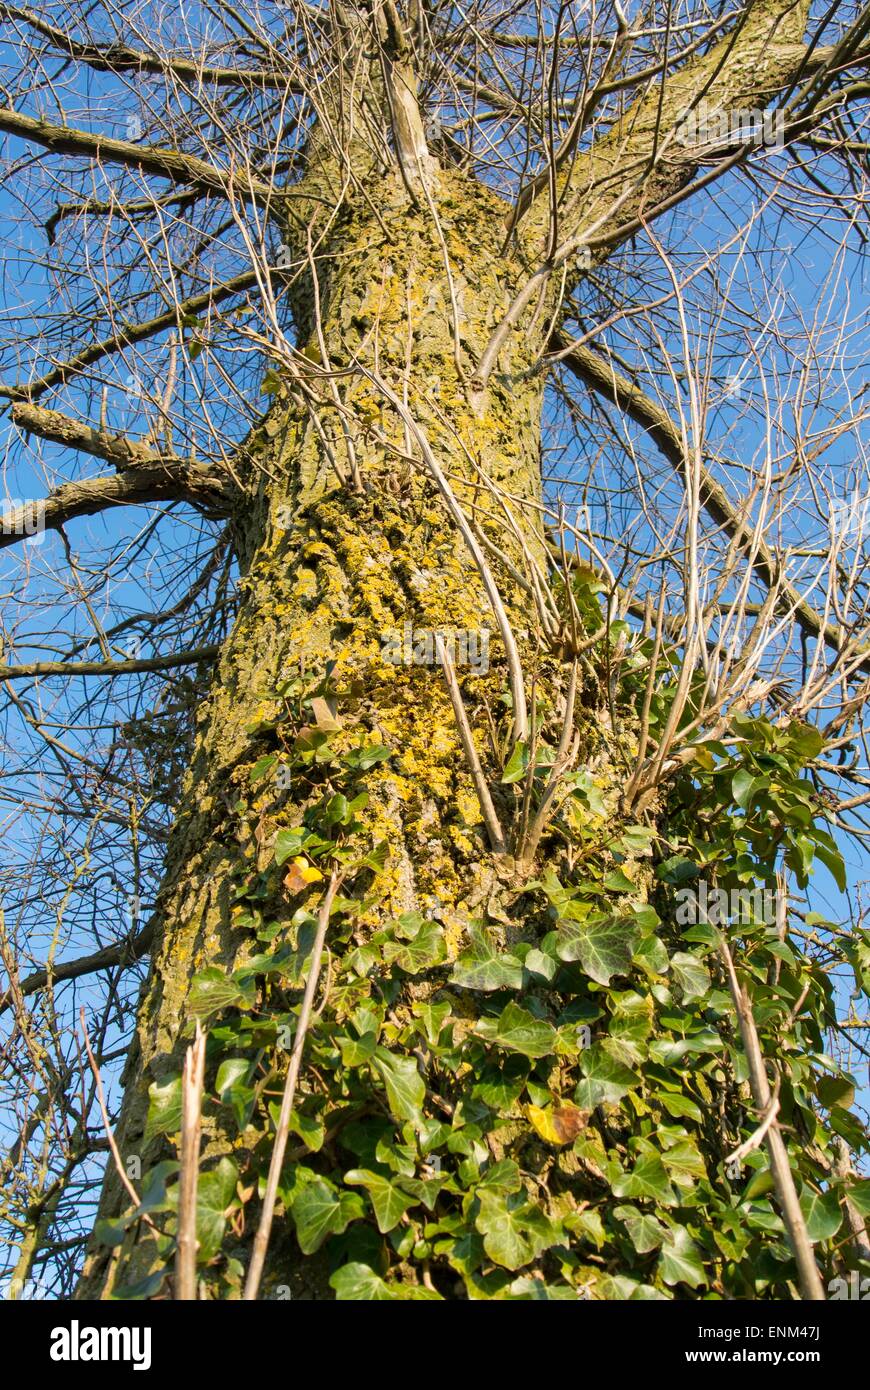 Ivy crescendo tronco inglese di quercia Foto Stock